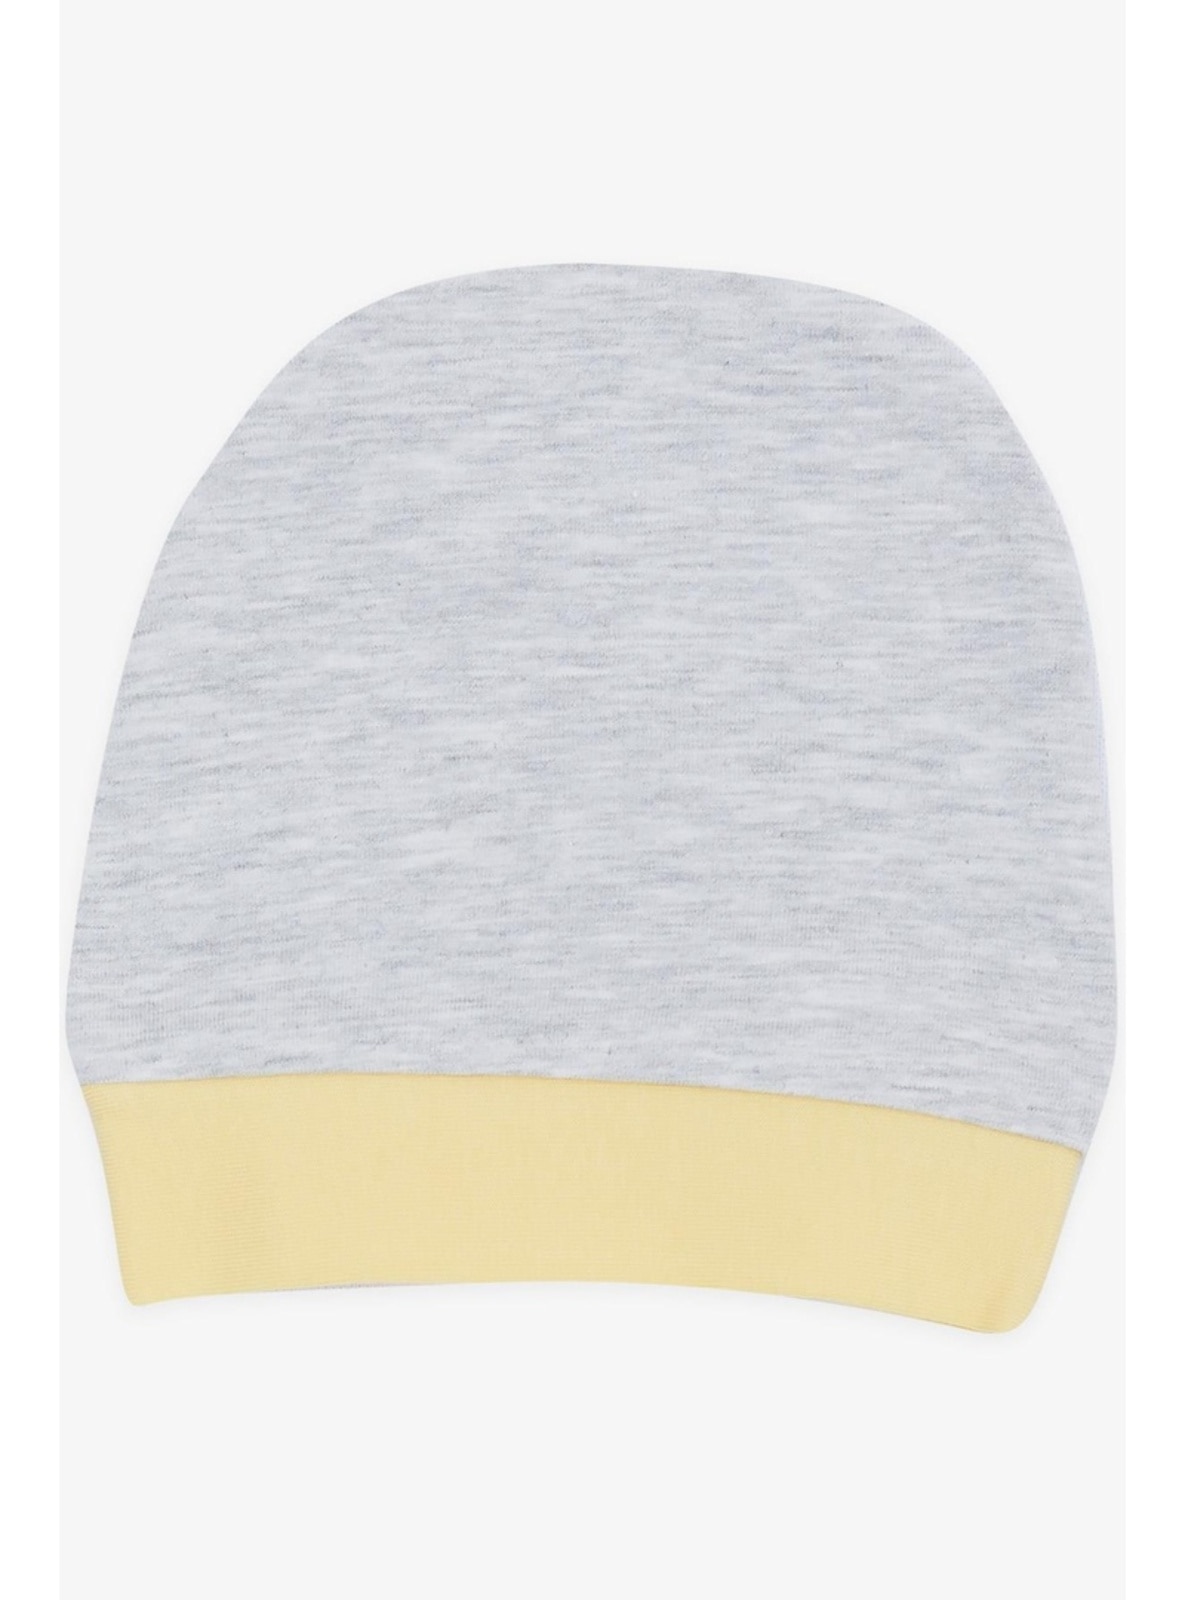 Light Gray - Baby Headbands, Hats & Hairclips